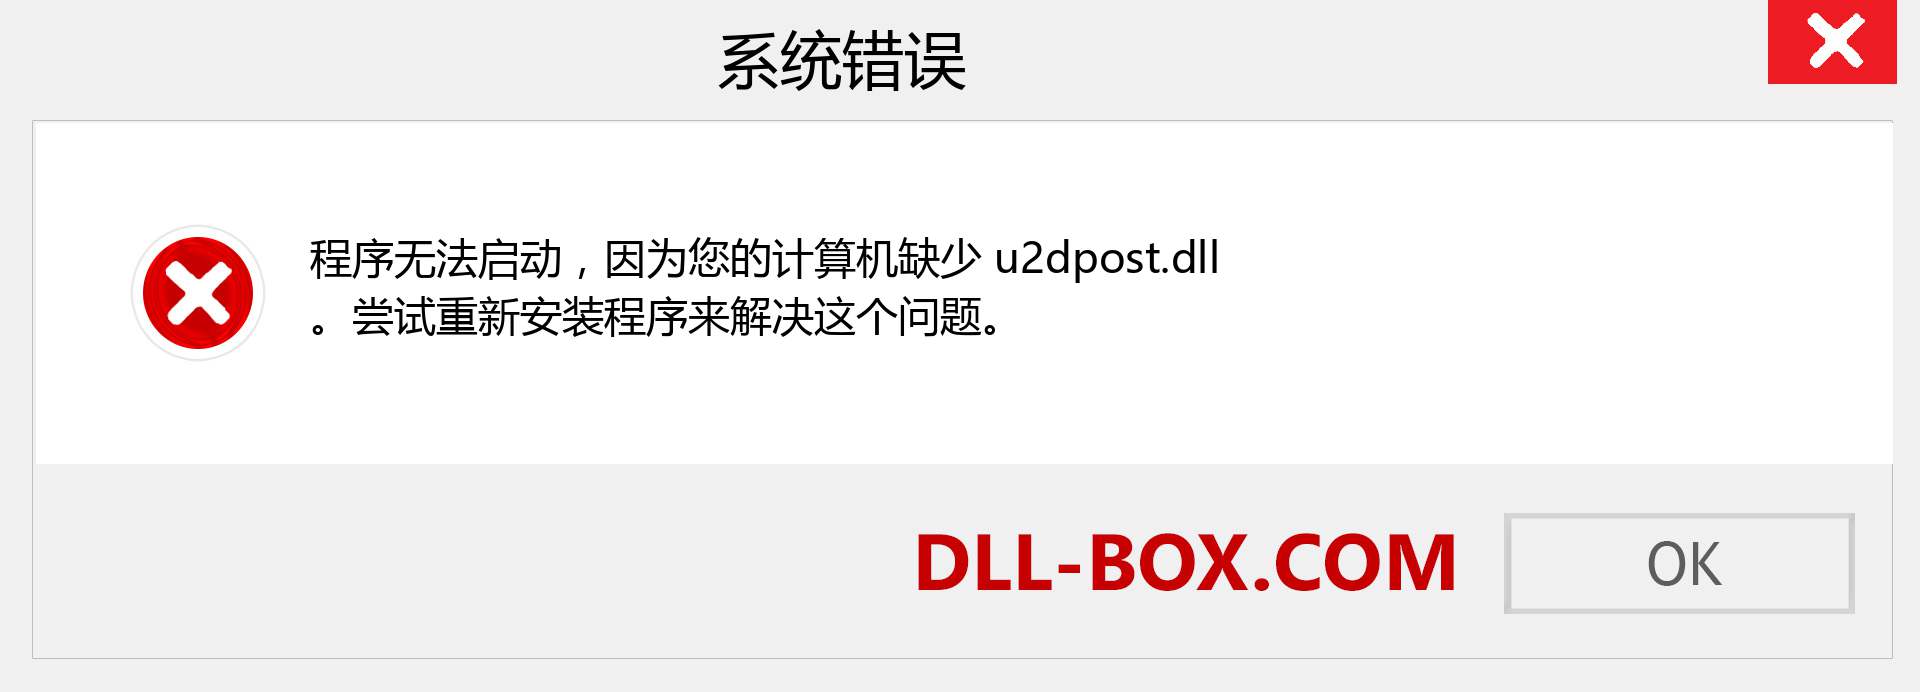 u2dpost.dll 文件丢失？。 适用于 Windows 7、8、10 的下载 - 修复 Windows、照片、图像上的 u2dpost dll 丢失错误